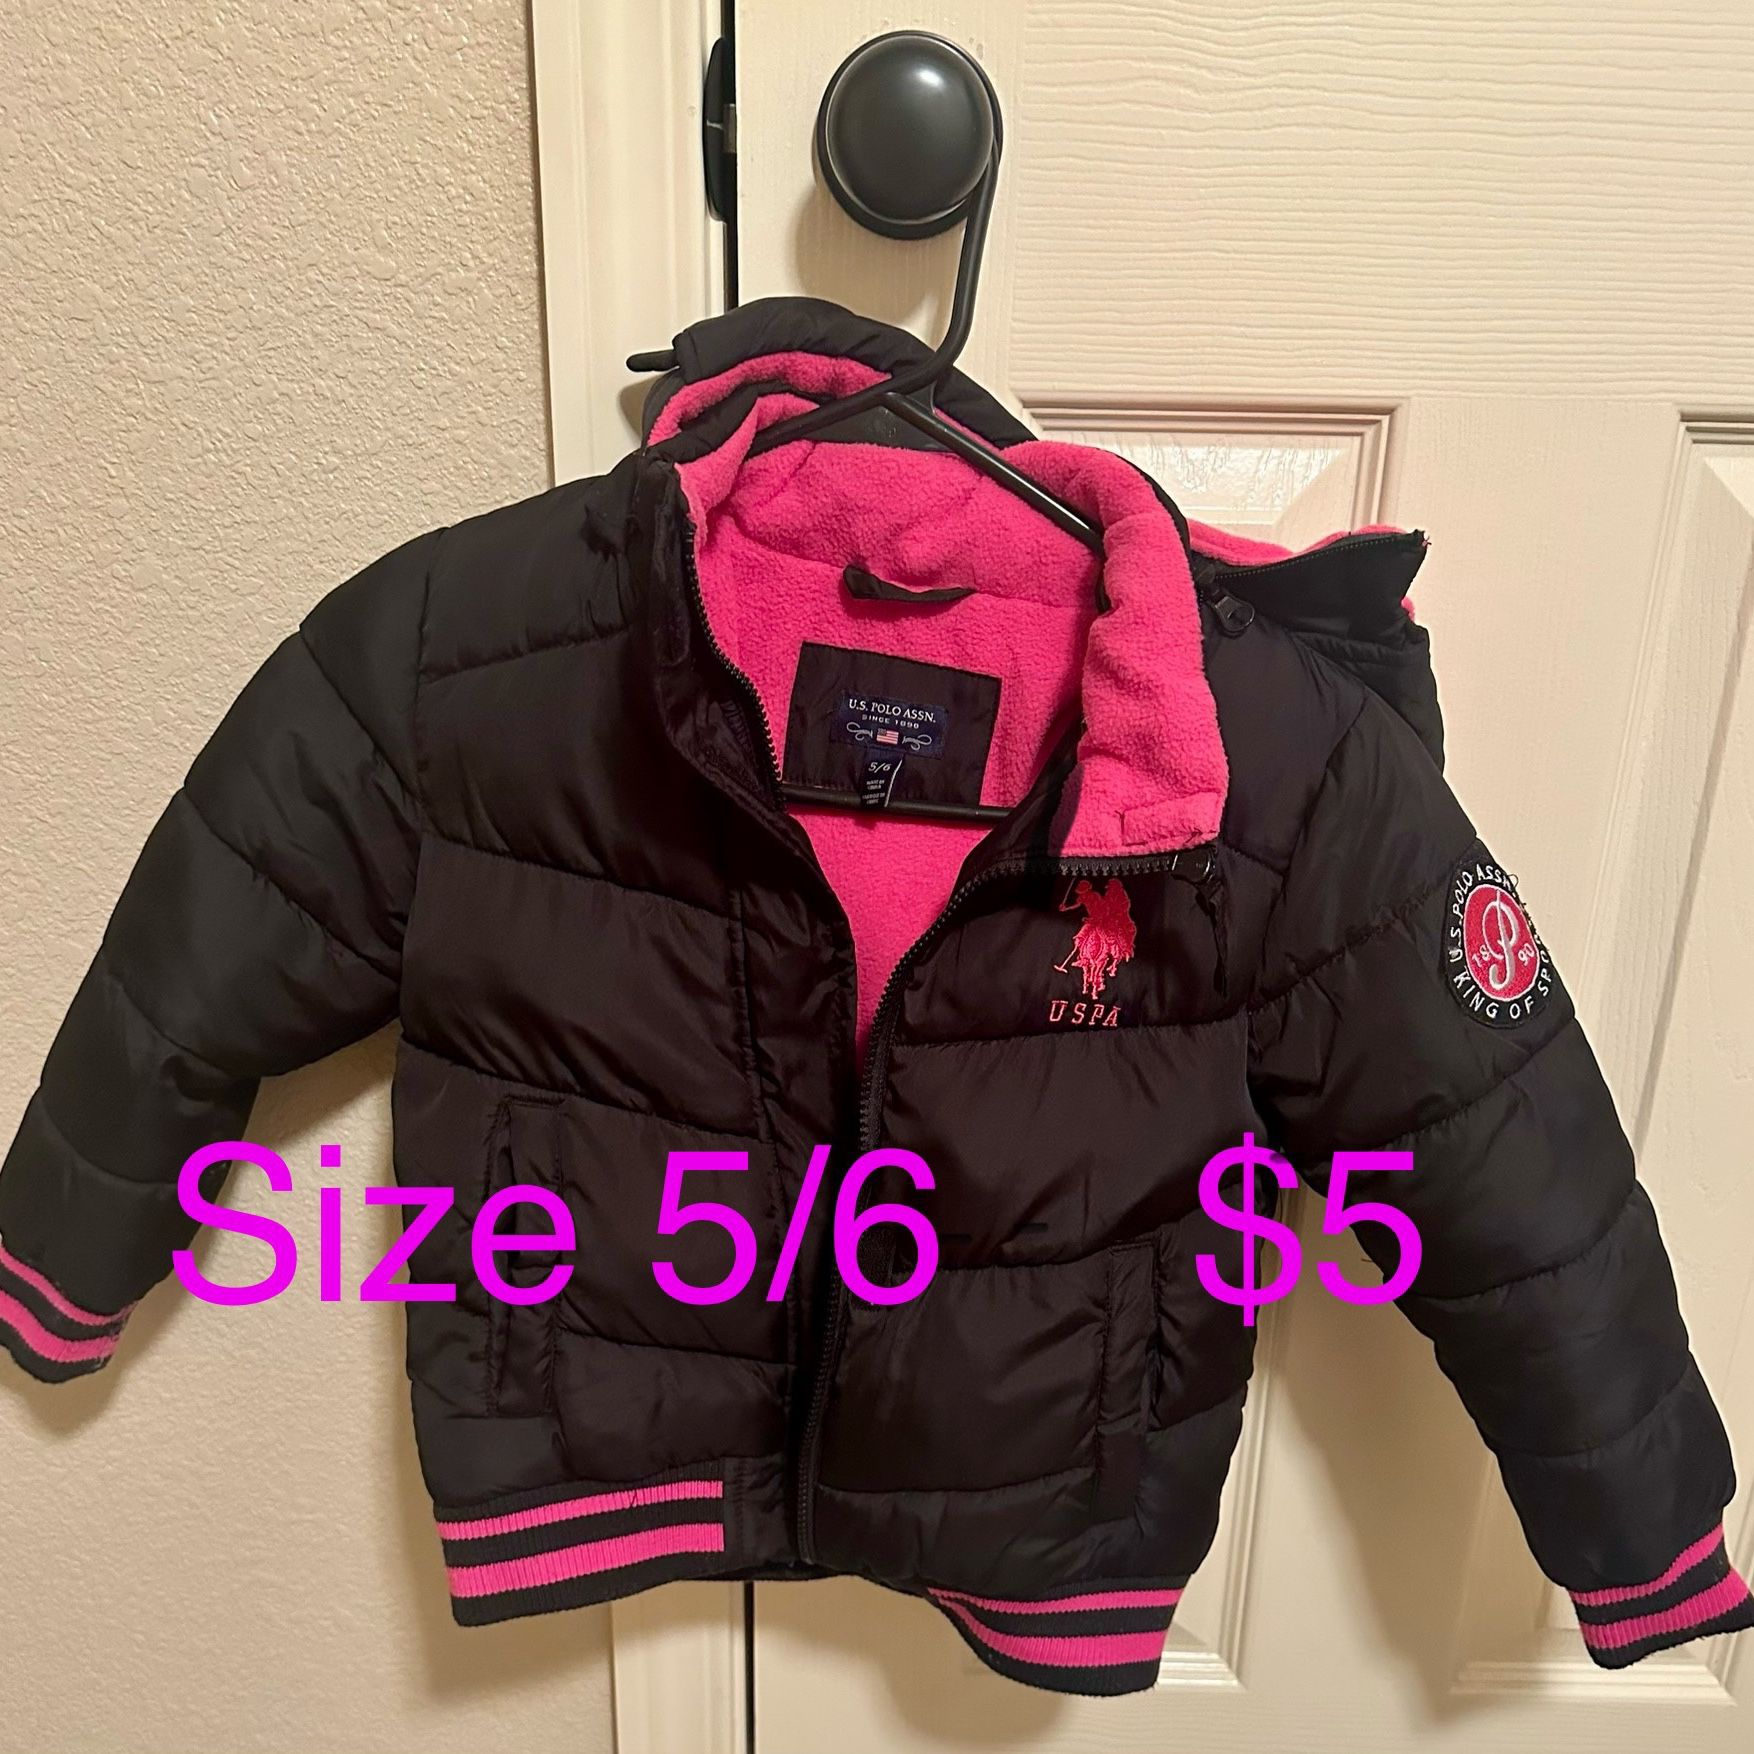 Kids Used Size 5/6 Jacket